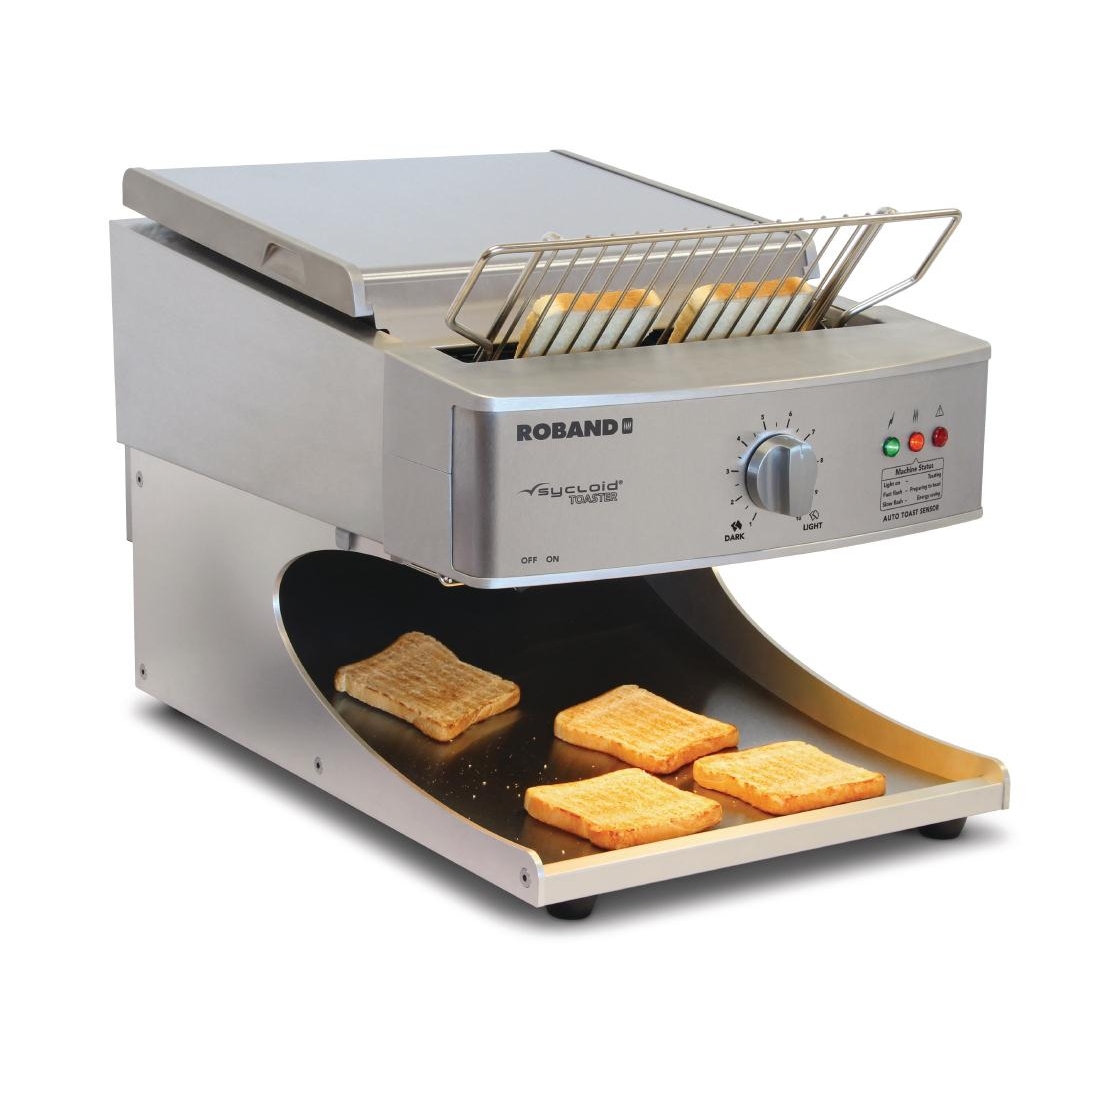 Roband Sycloid Conveyor Toaster ST500A